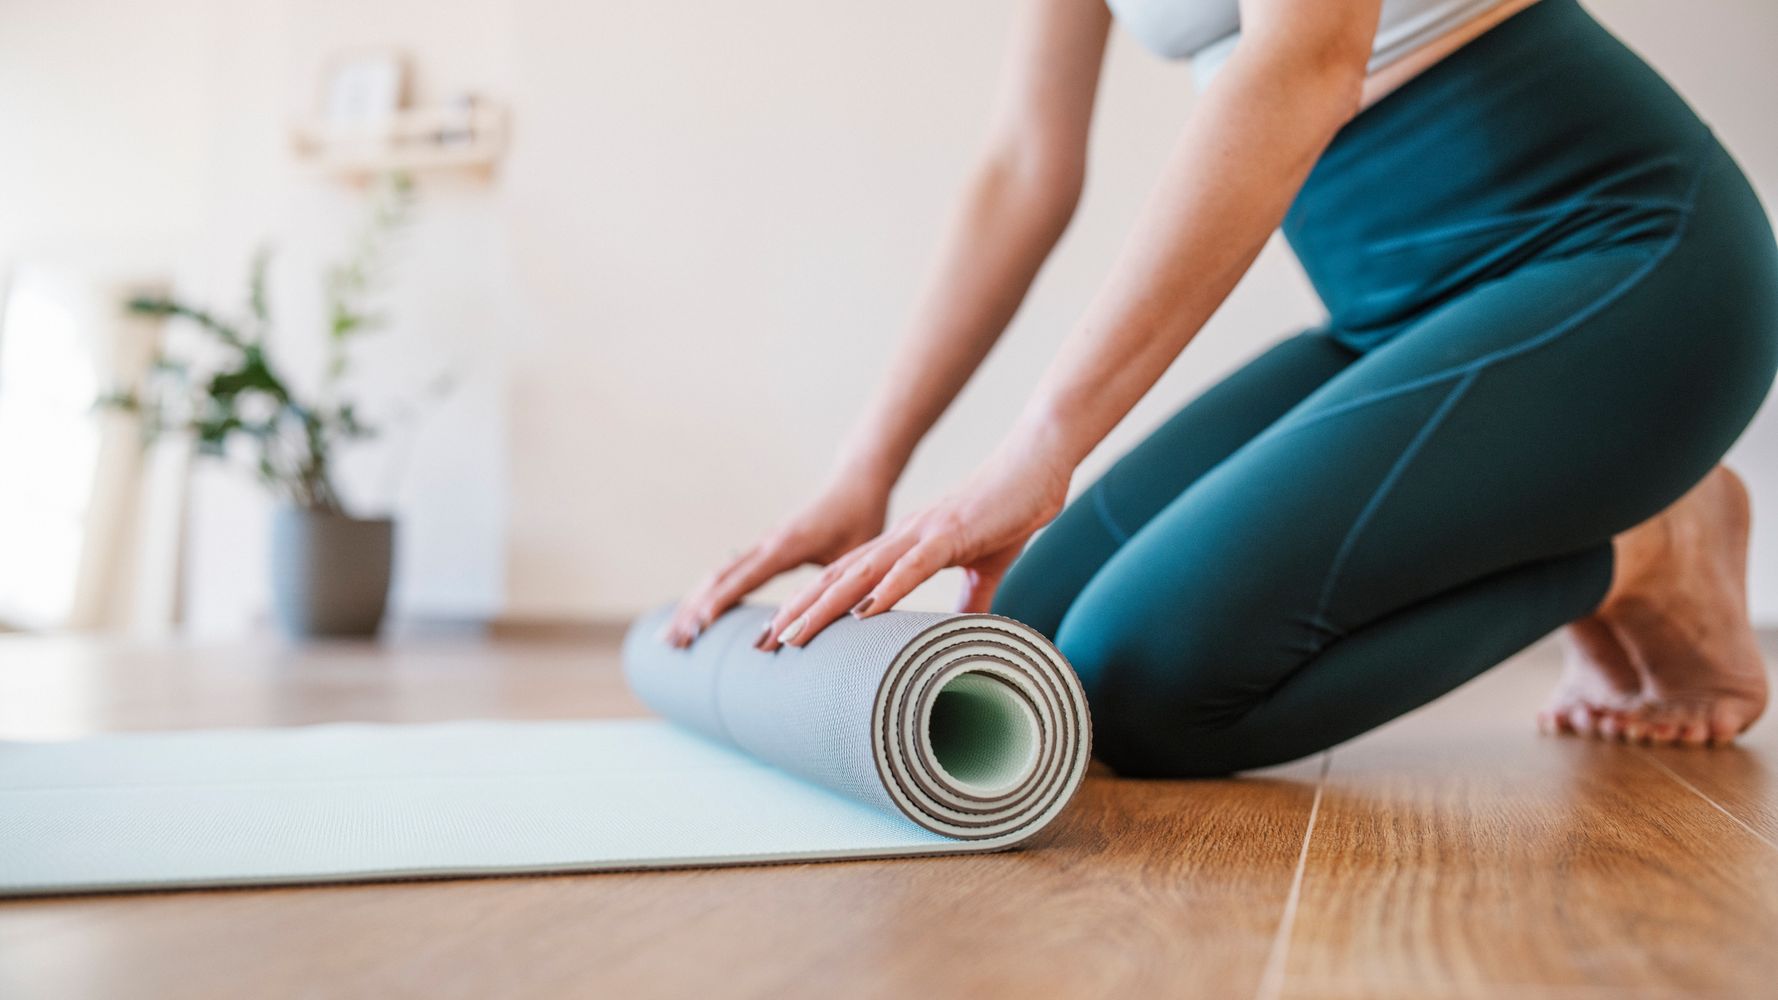 lululemon Yoga Mat Double-Sided Anti-Slip Men Girls Special Fitness Natural  Rubber Household